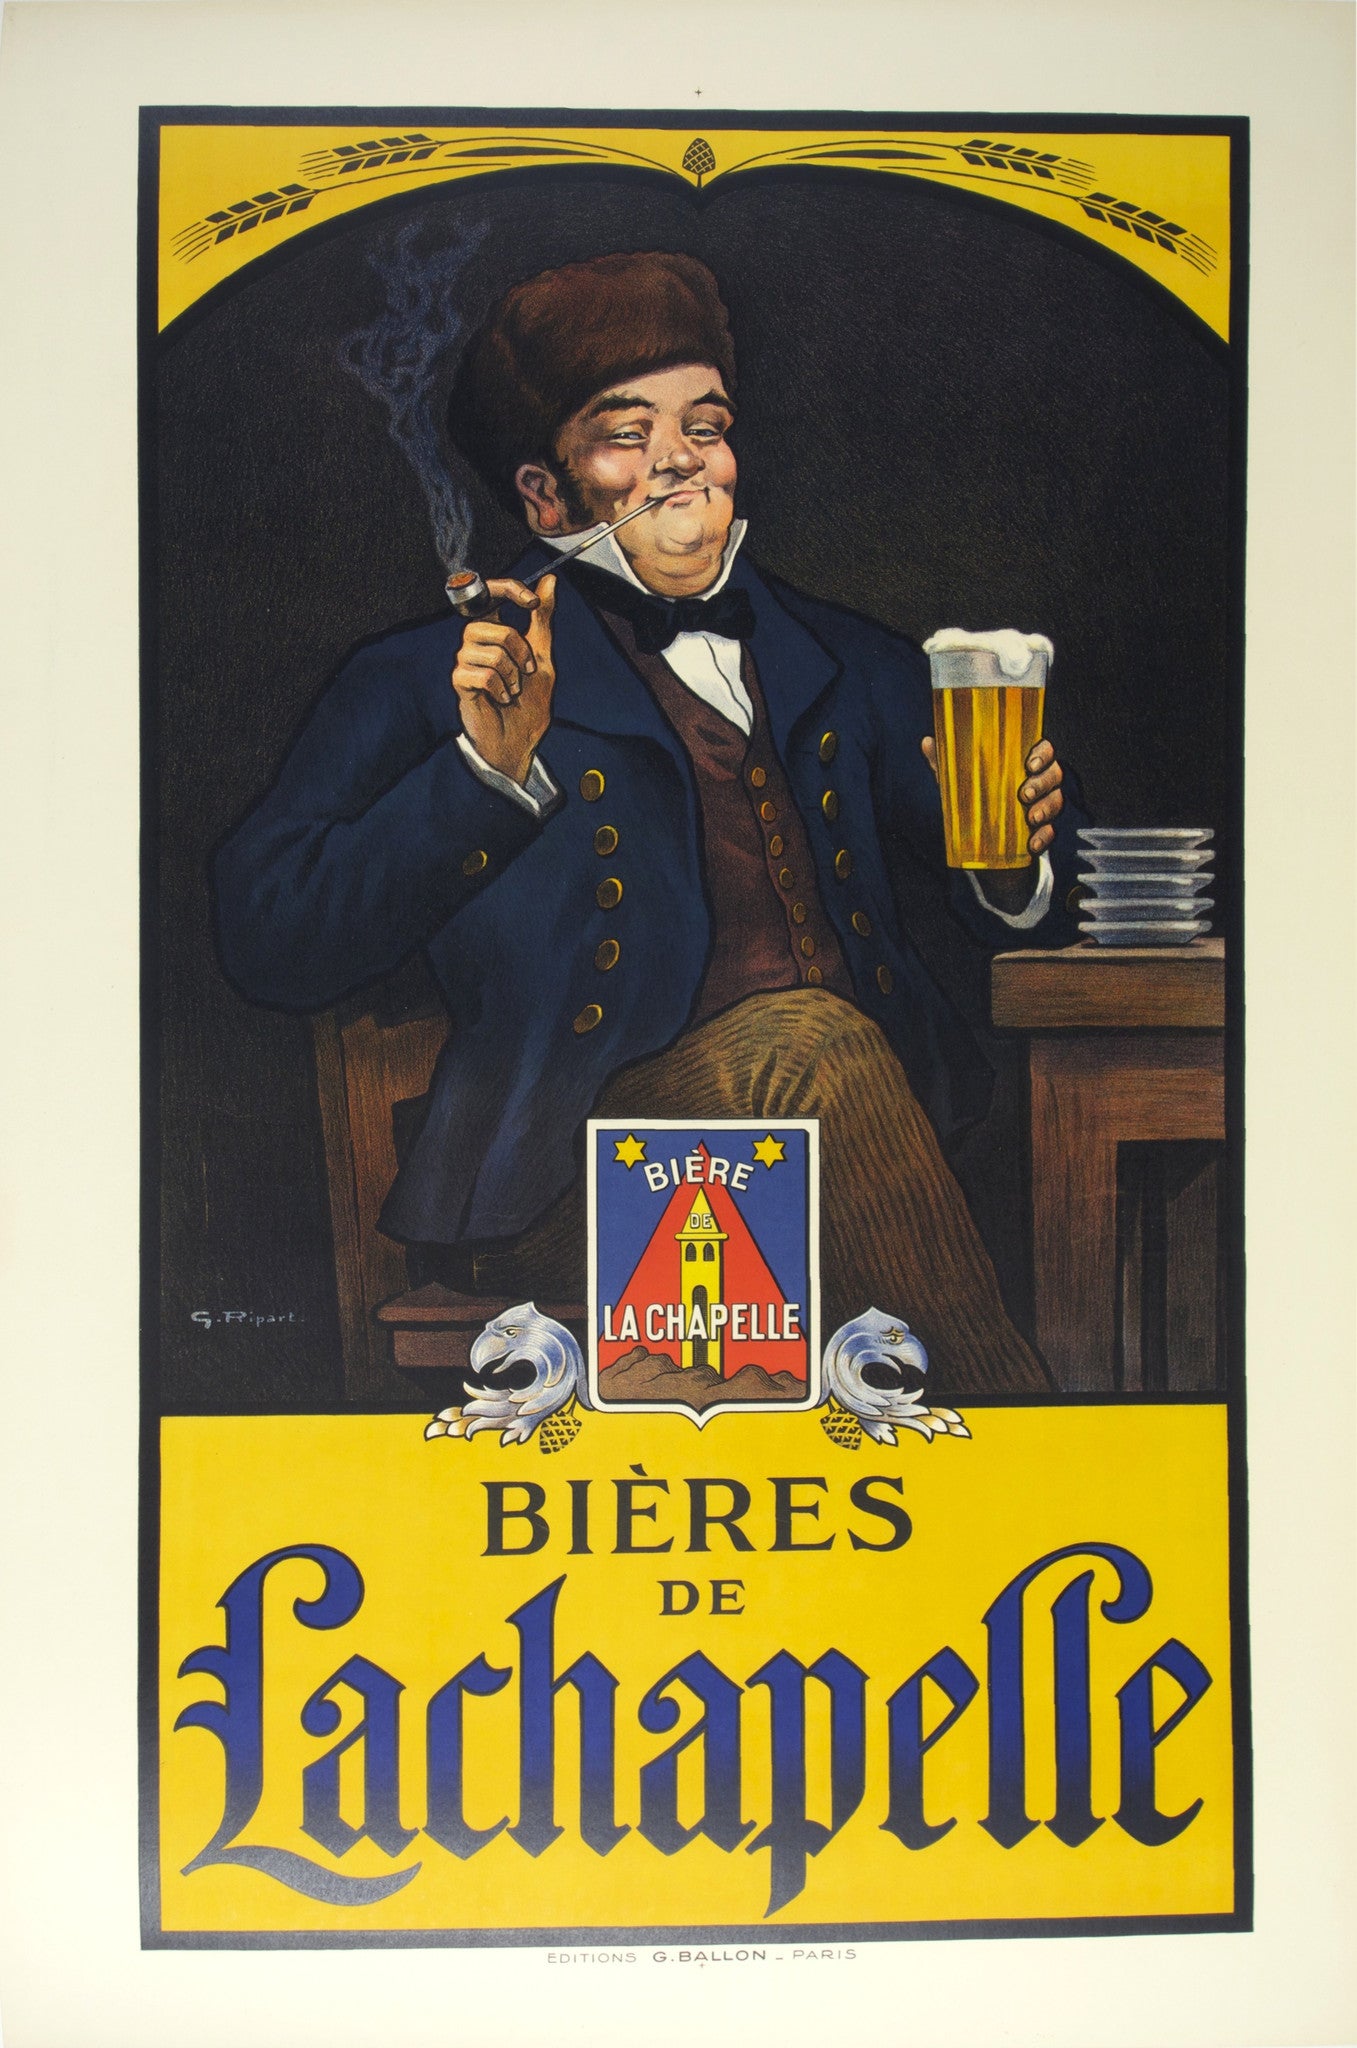 Bières de Lachapelle